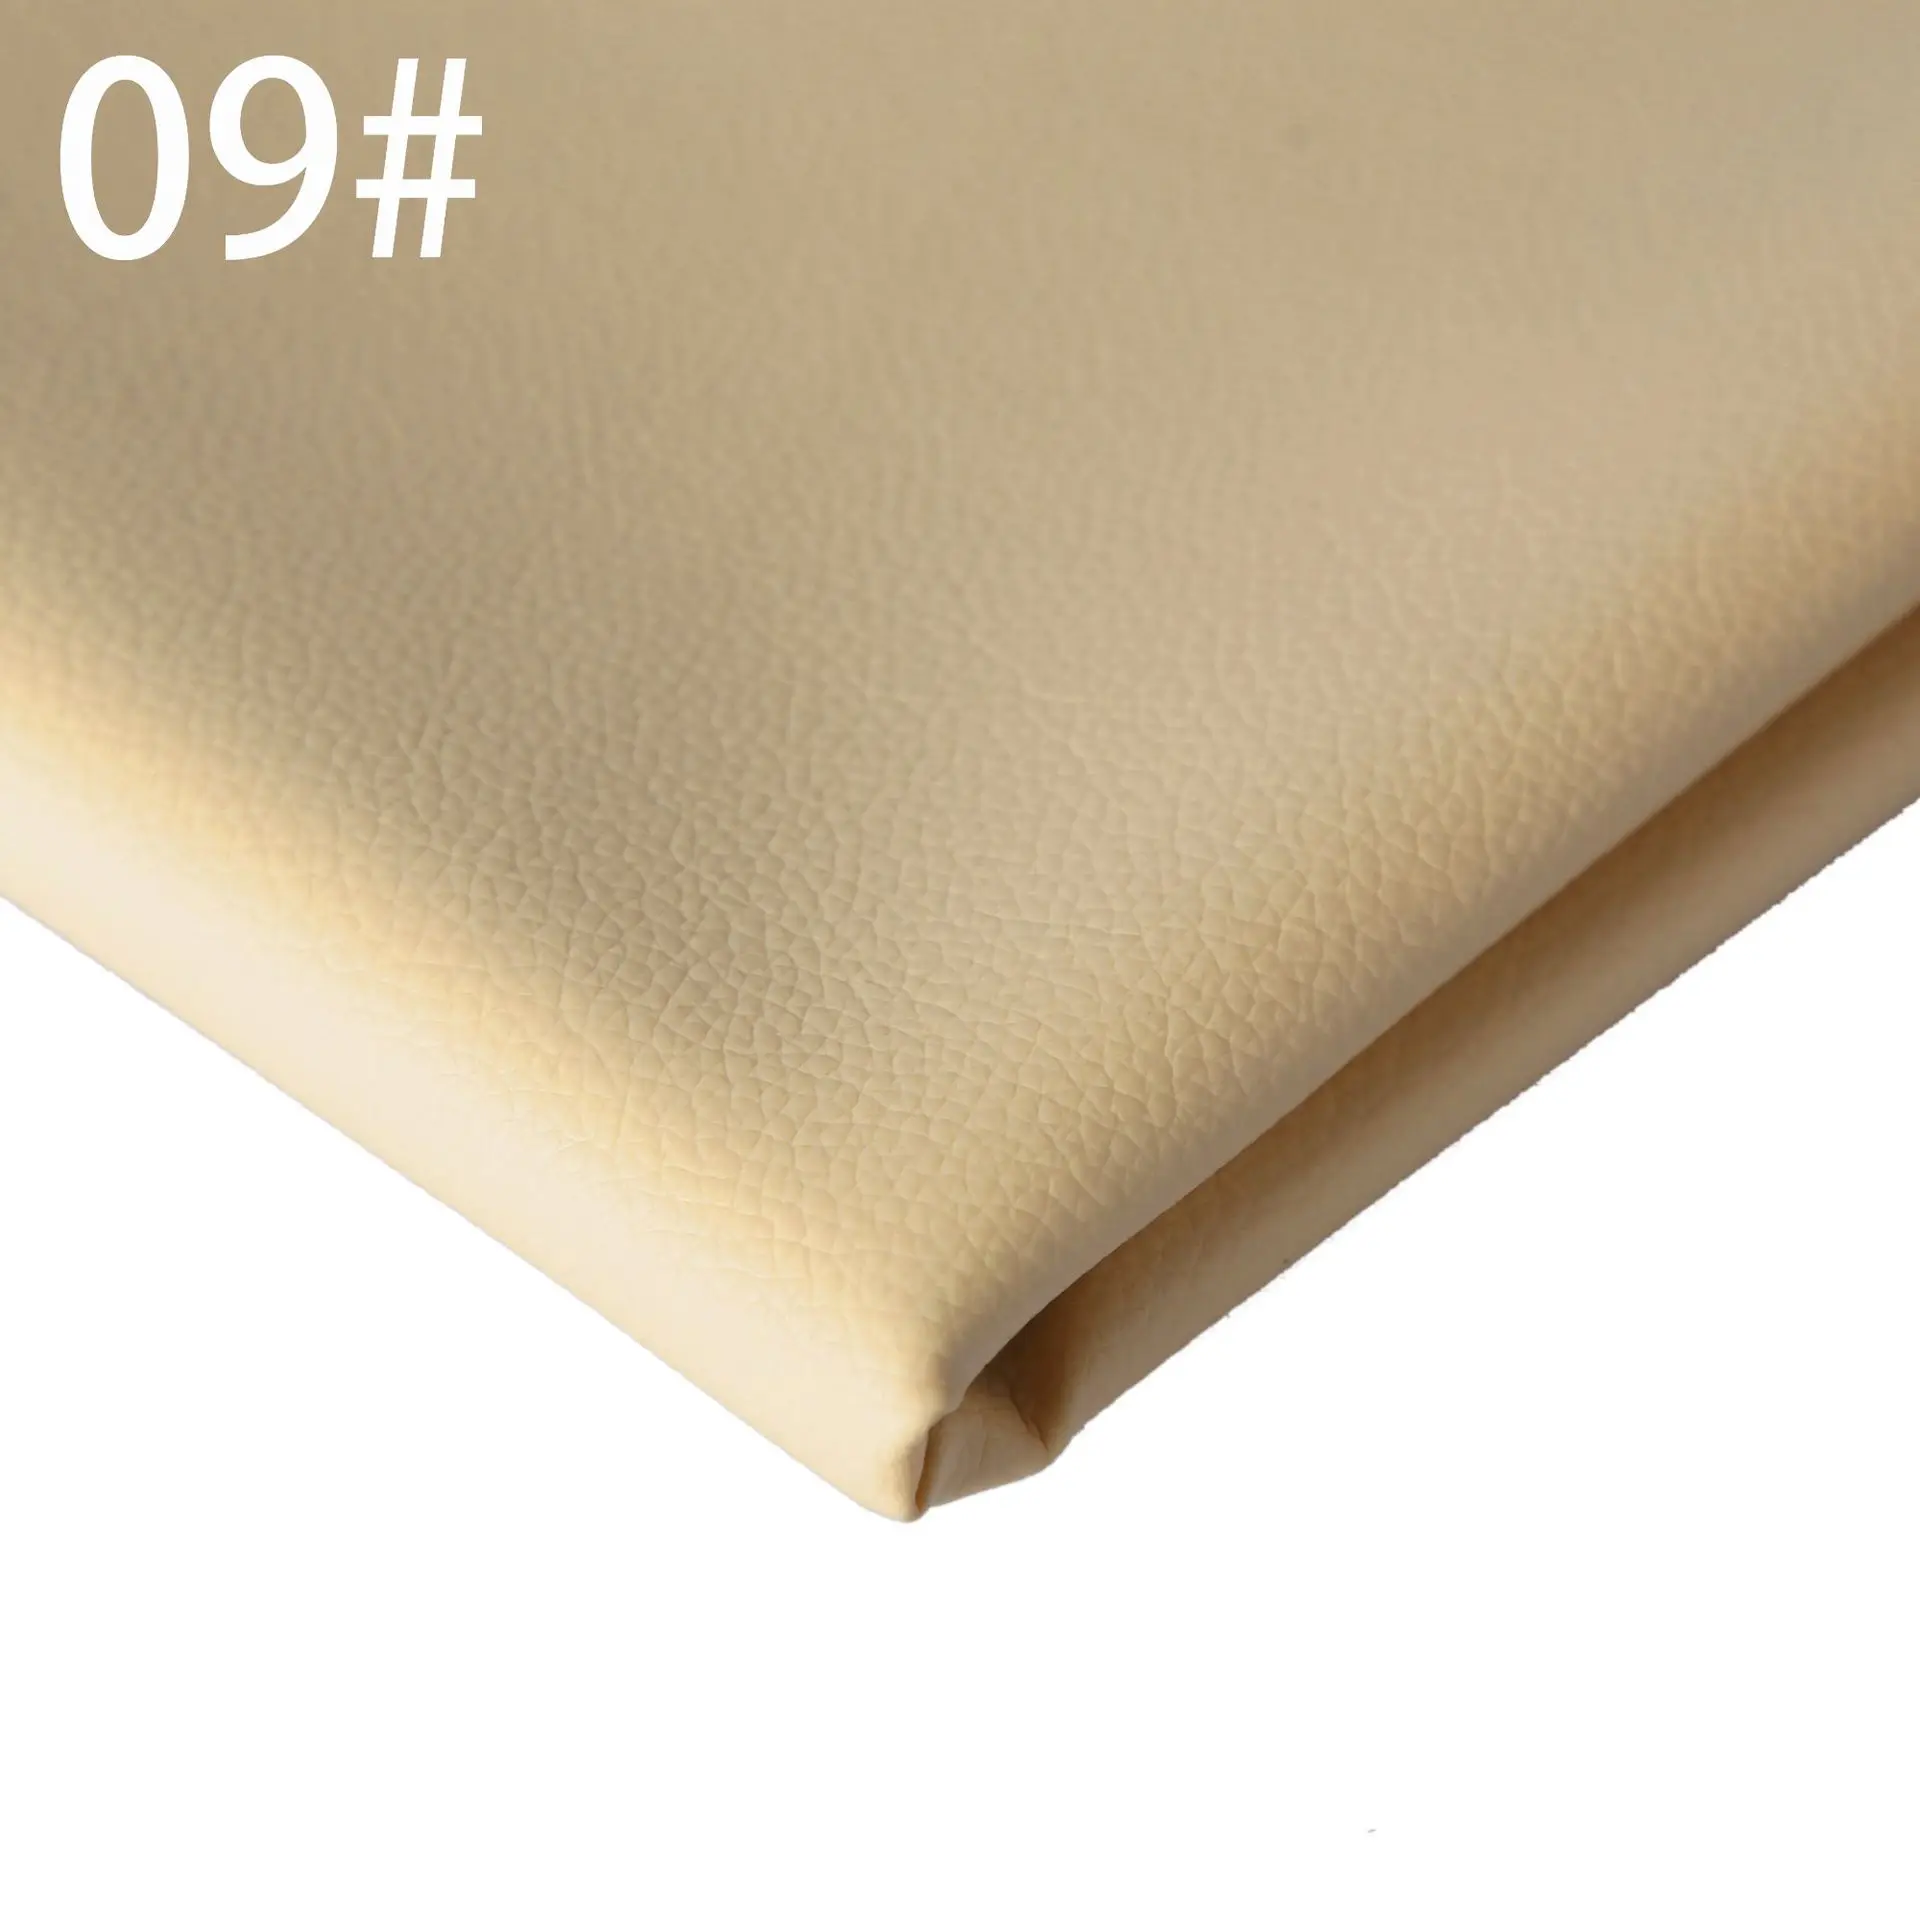 DE90 маленький личи 0,07 см Матовый кожаный диван из ткани Подушка искусственная кожа задний план стены мягкий пакет жесткий пакет кожа - Цвет: 9